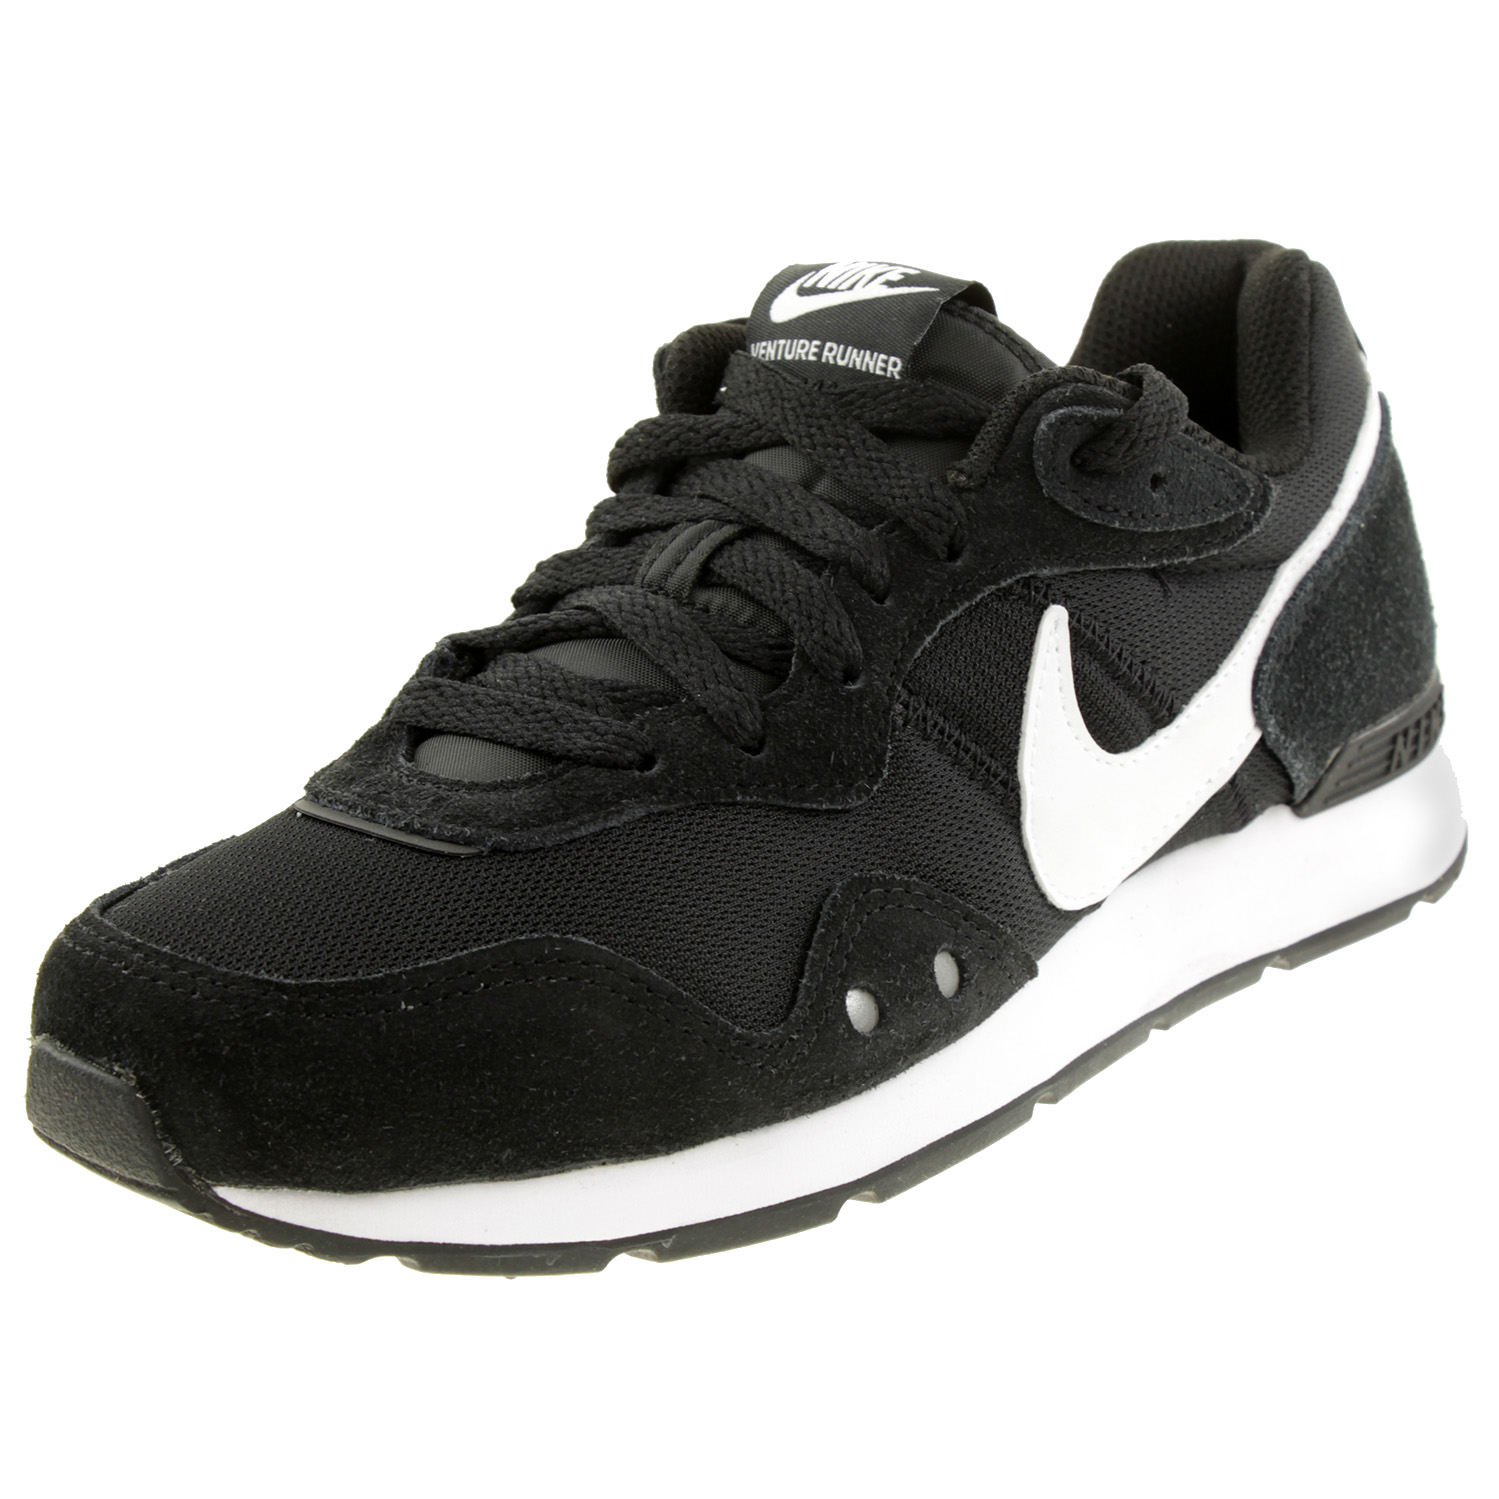 Nike Venture Runner Laufschuhe Womens Damen Sneaker Sportschuhe Run CK2948 001 schwarz